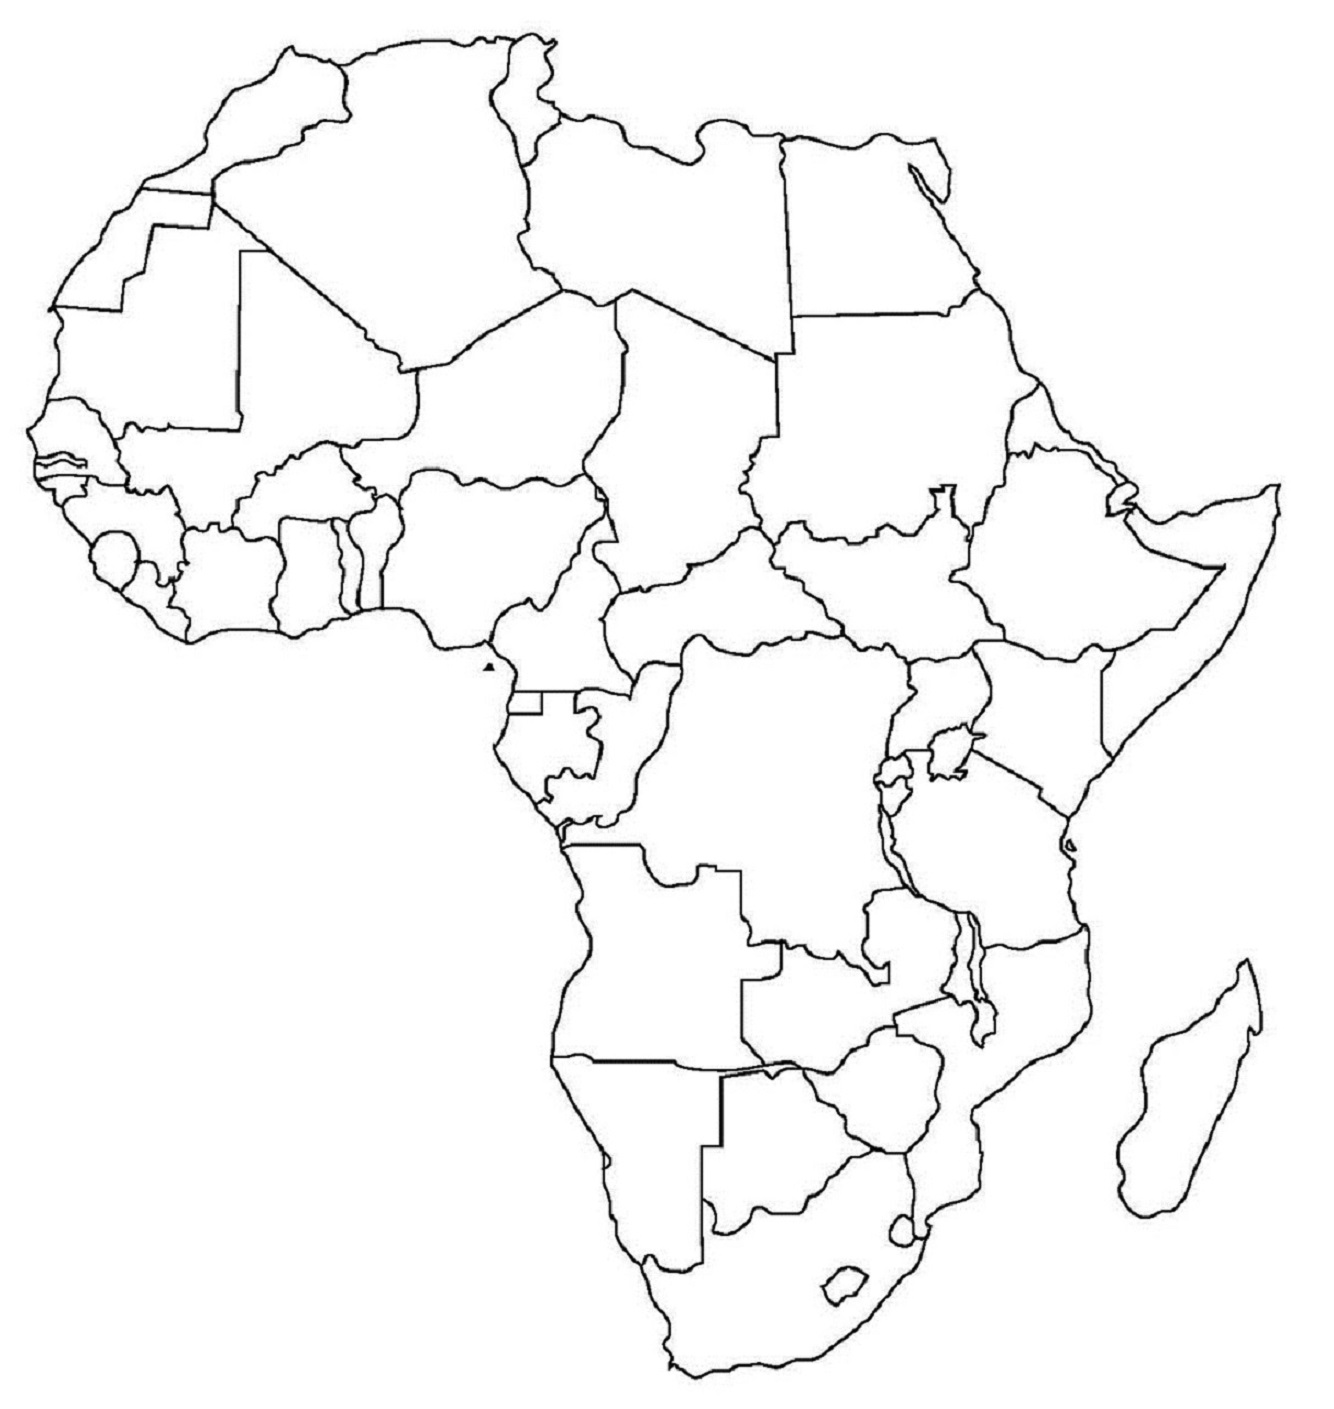 Africa outline map credit Bruce Jones Design